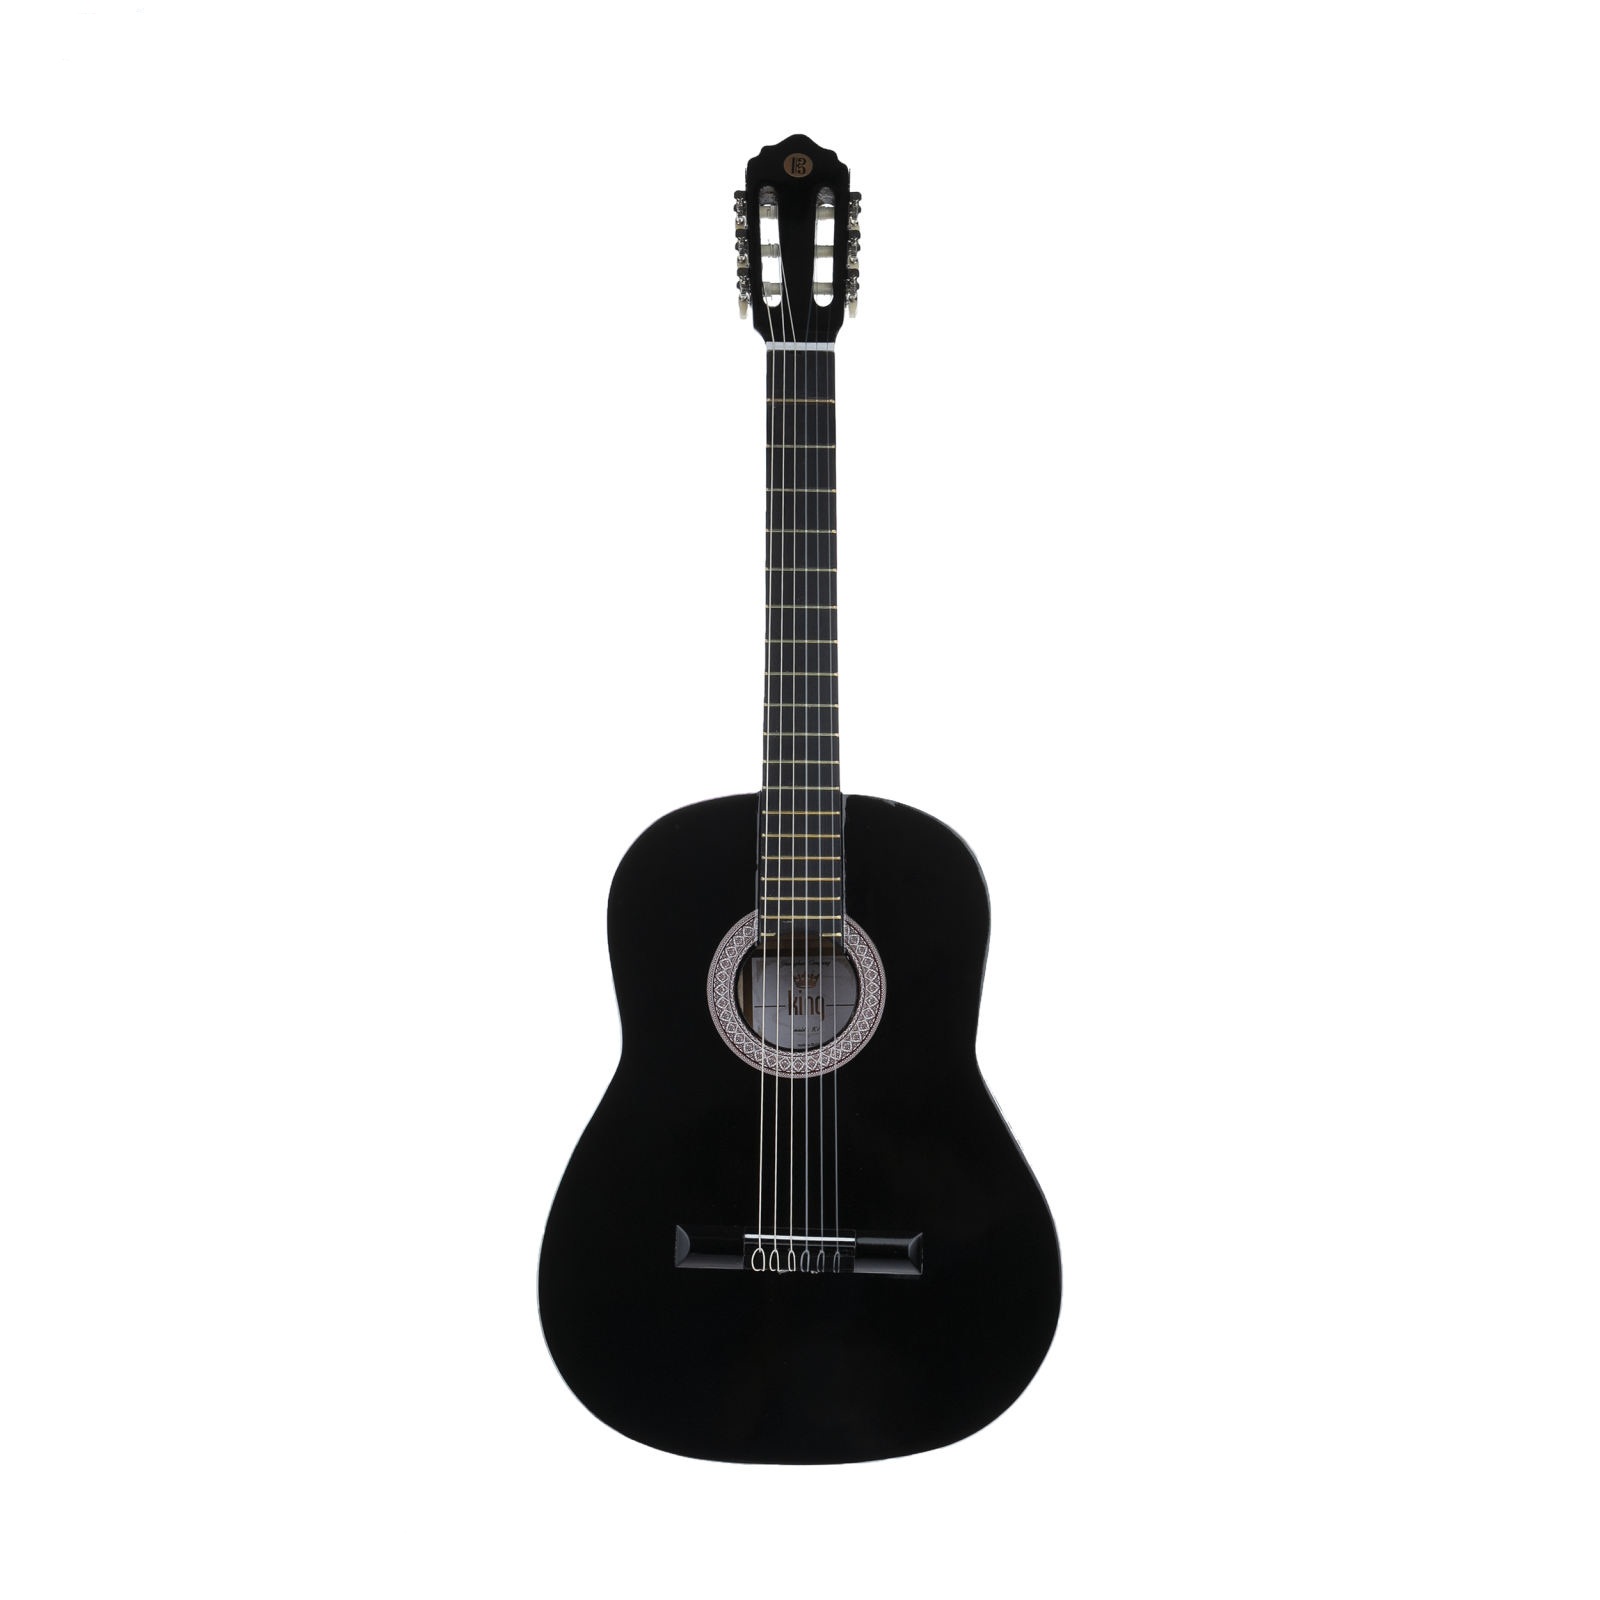 نکته خرید - قیمت روز گیتار کلاسیک کینگ مدل k01 خرید